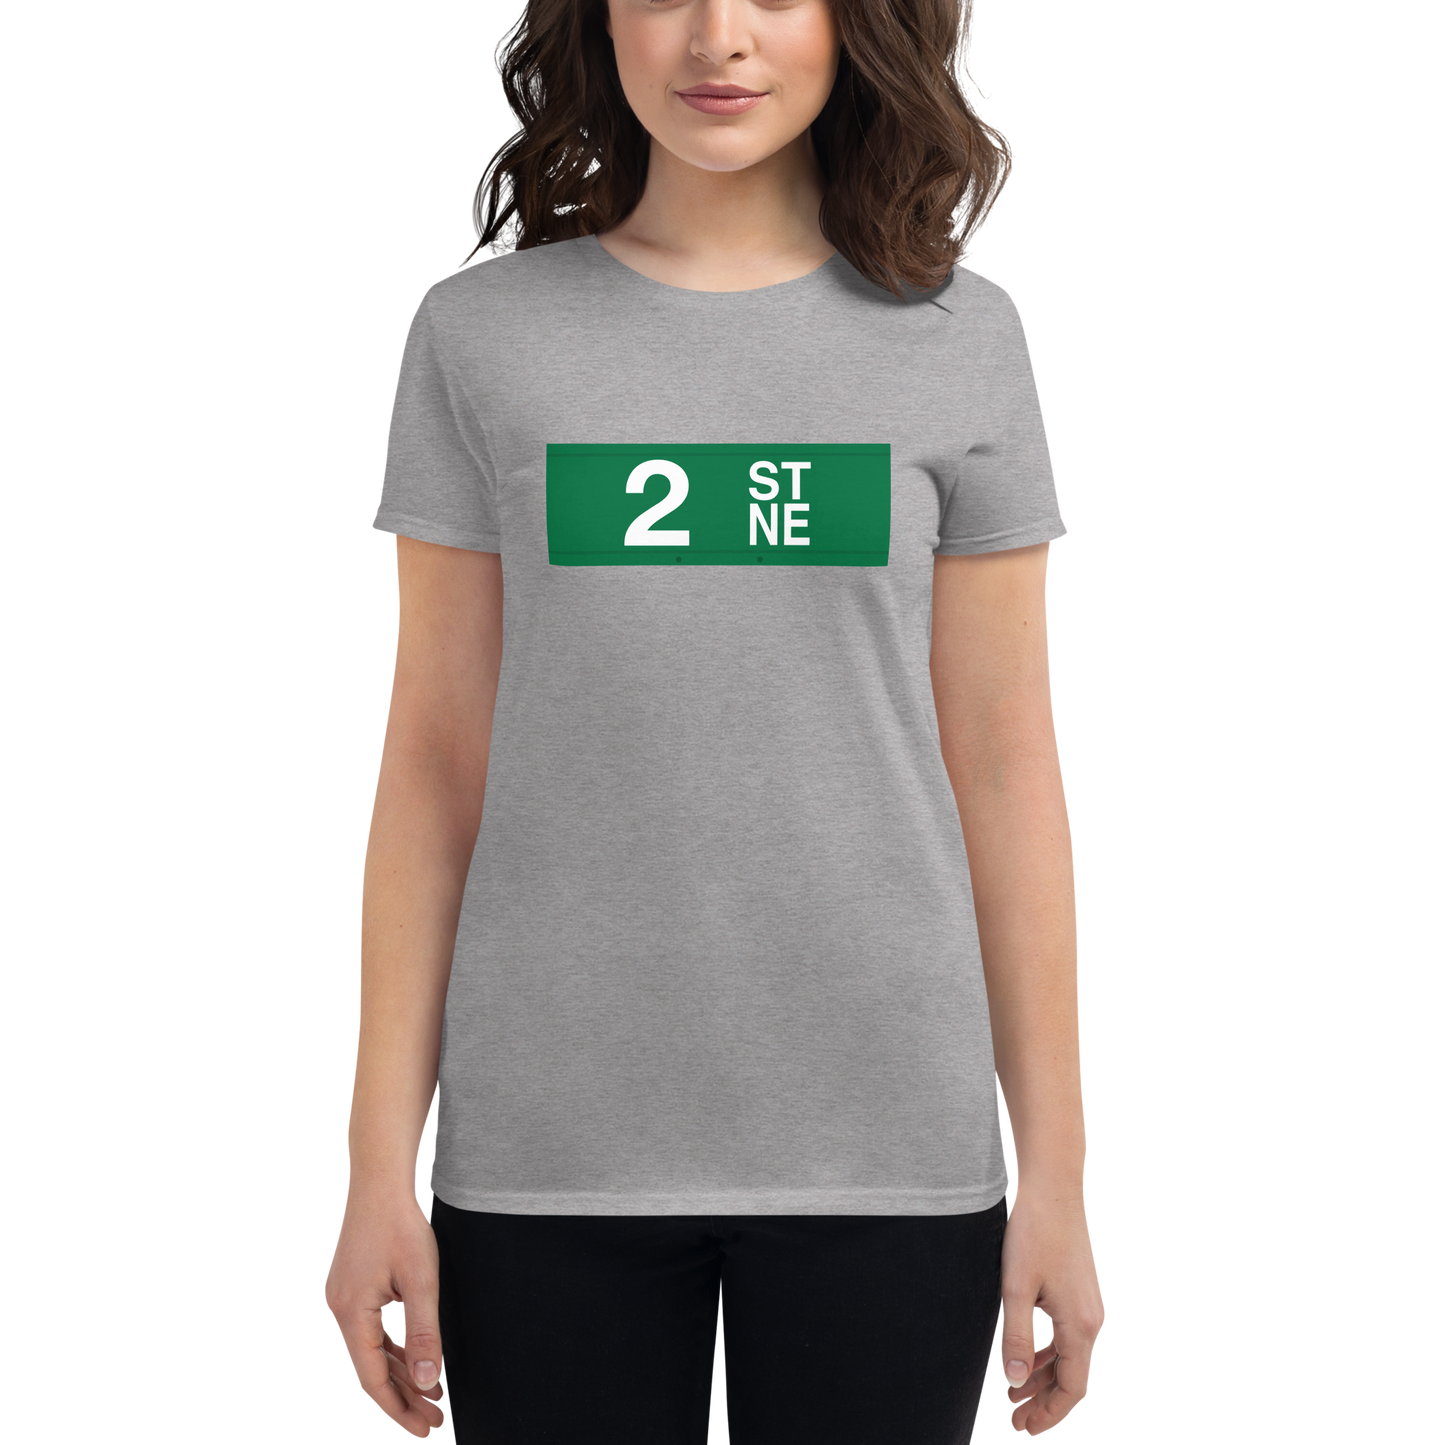 2nd St NE Women's short sleeve t-shirt